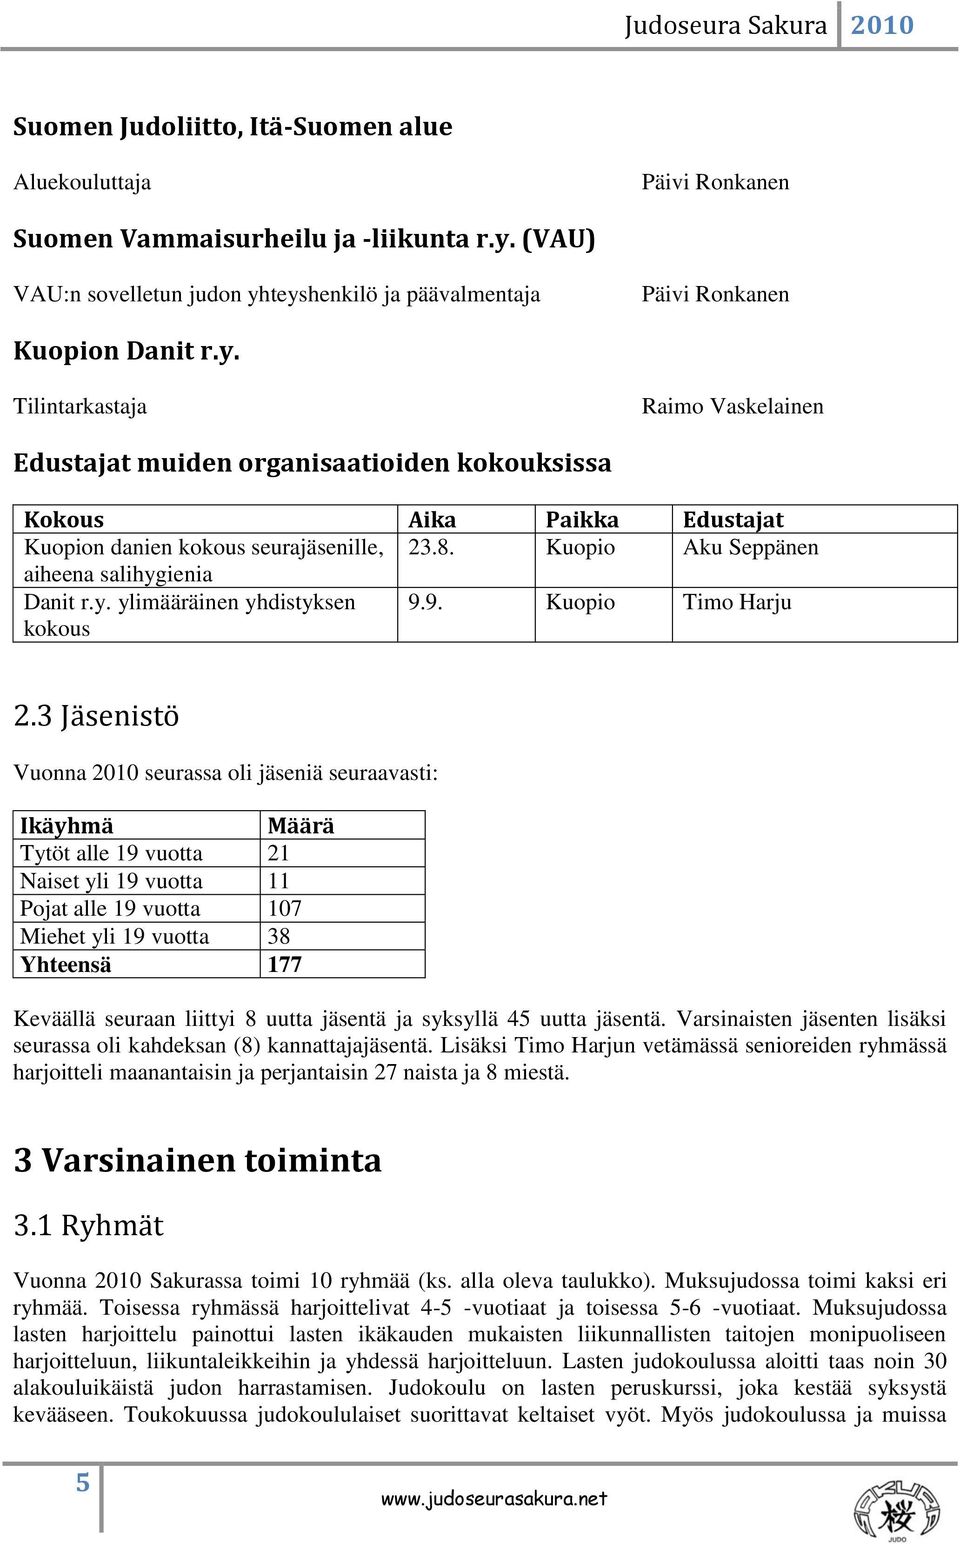 8. Kuopio Aku Seppänen aiheena salihygienia Danit r.y. ylimääräinen yhdistyksen kokous 9.9. Kuopio Timo Harju 2.